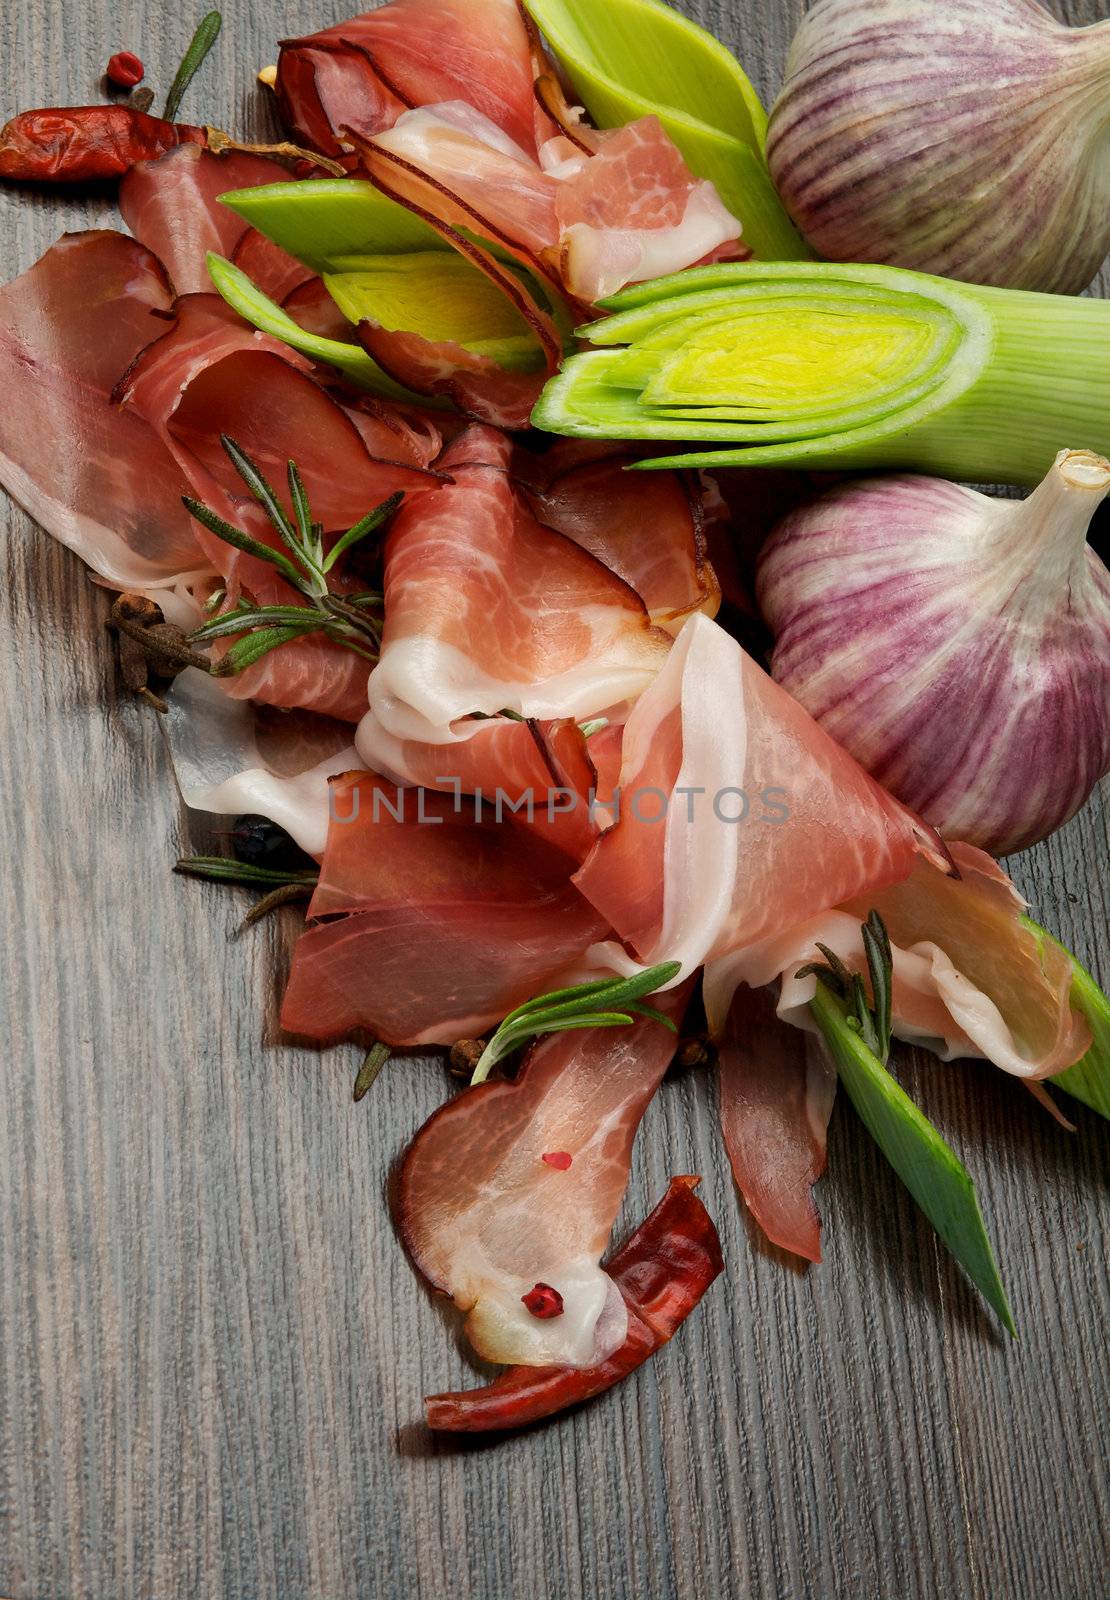 Slices of Perfect Jabugo Ham with Ripe Leek and Garlic closeup on Dark Wood background